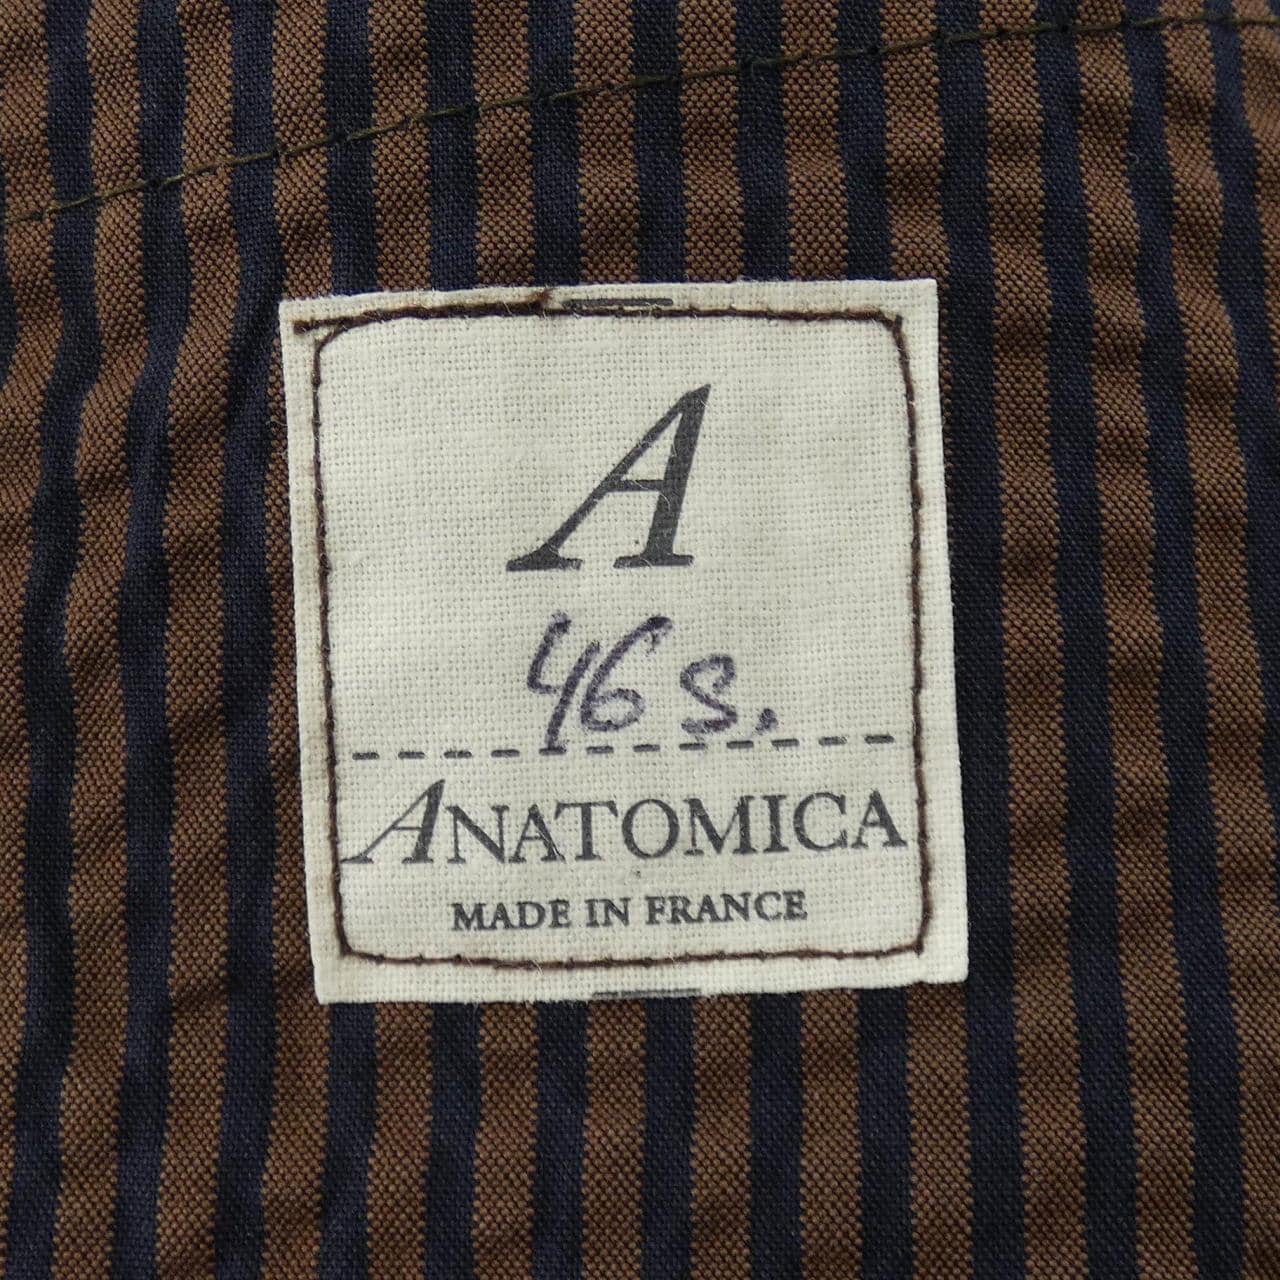 アナトミカ ANATOMICA ジャケット